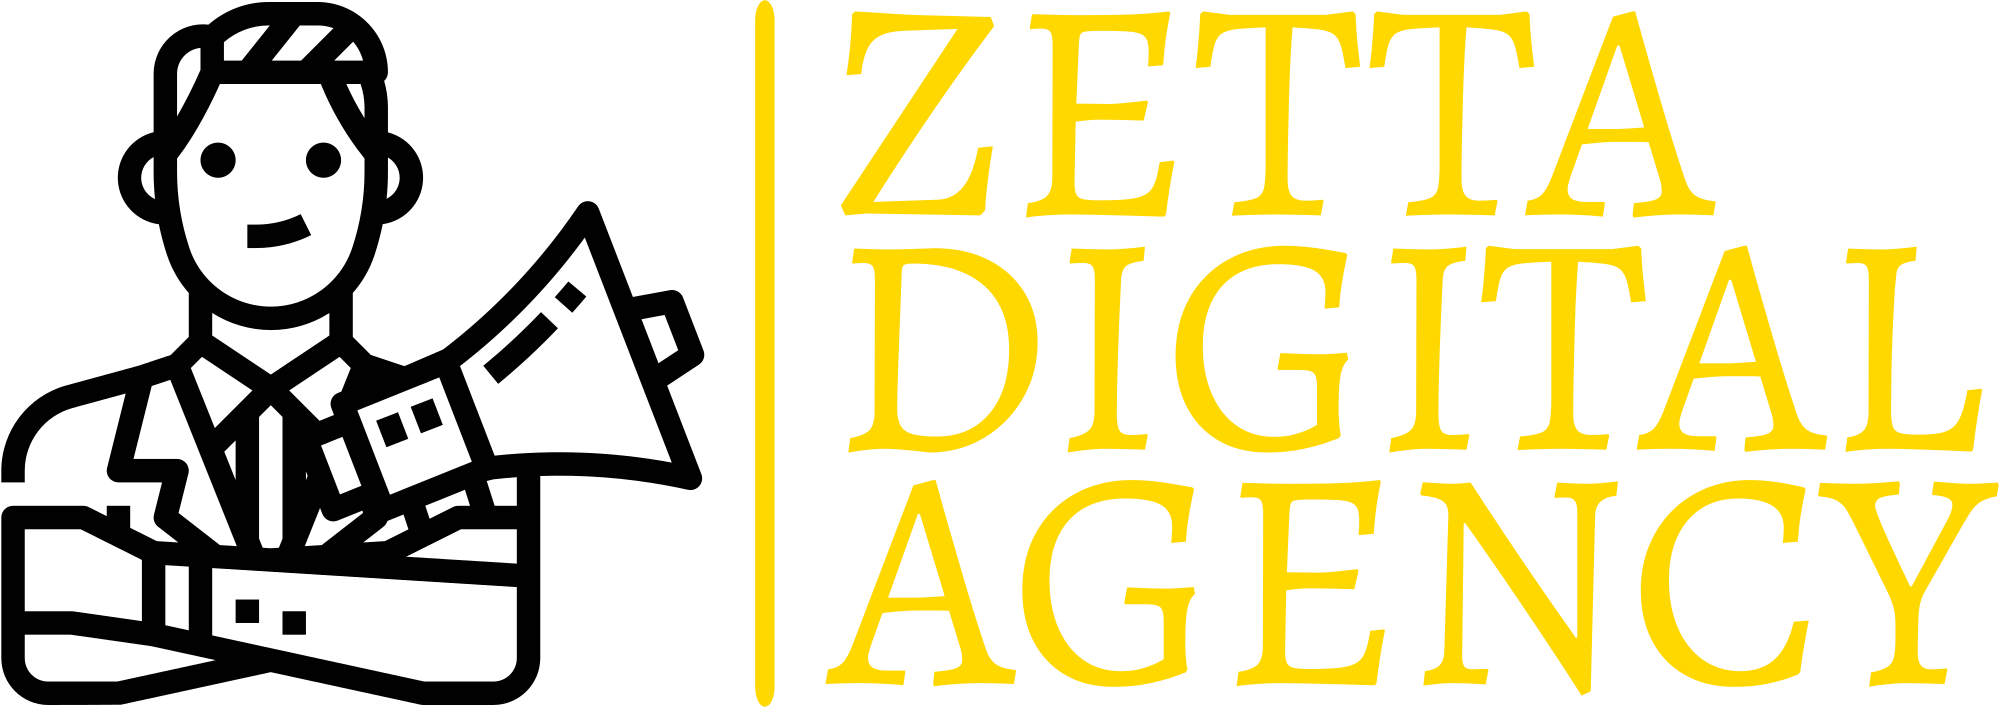 ZETTA Digital Agency